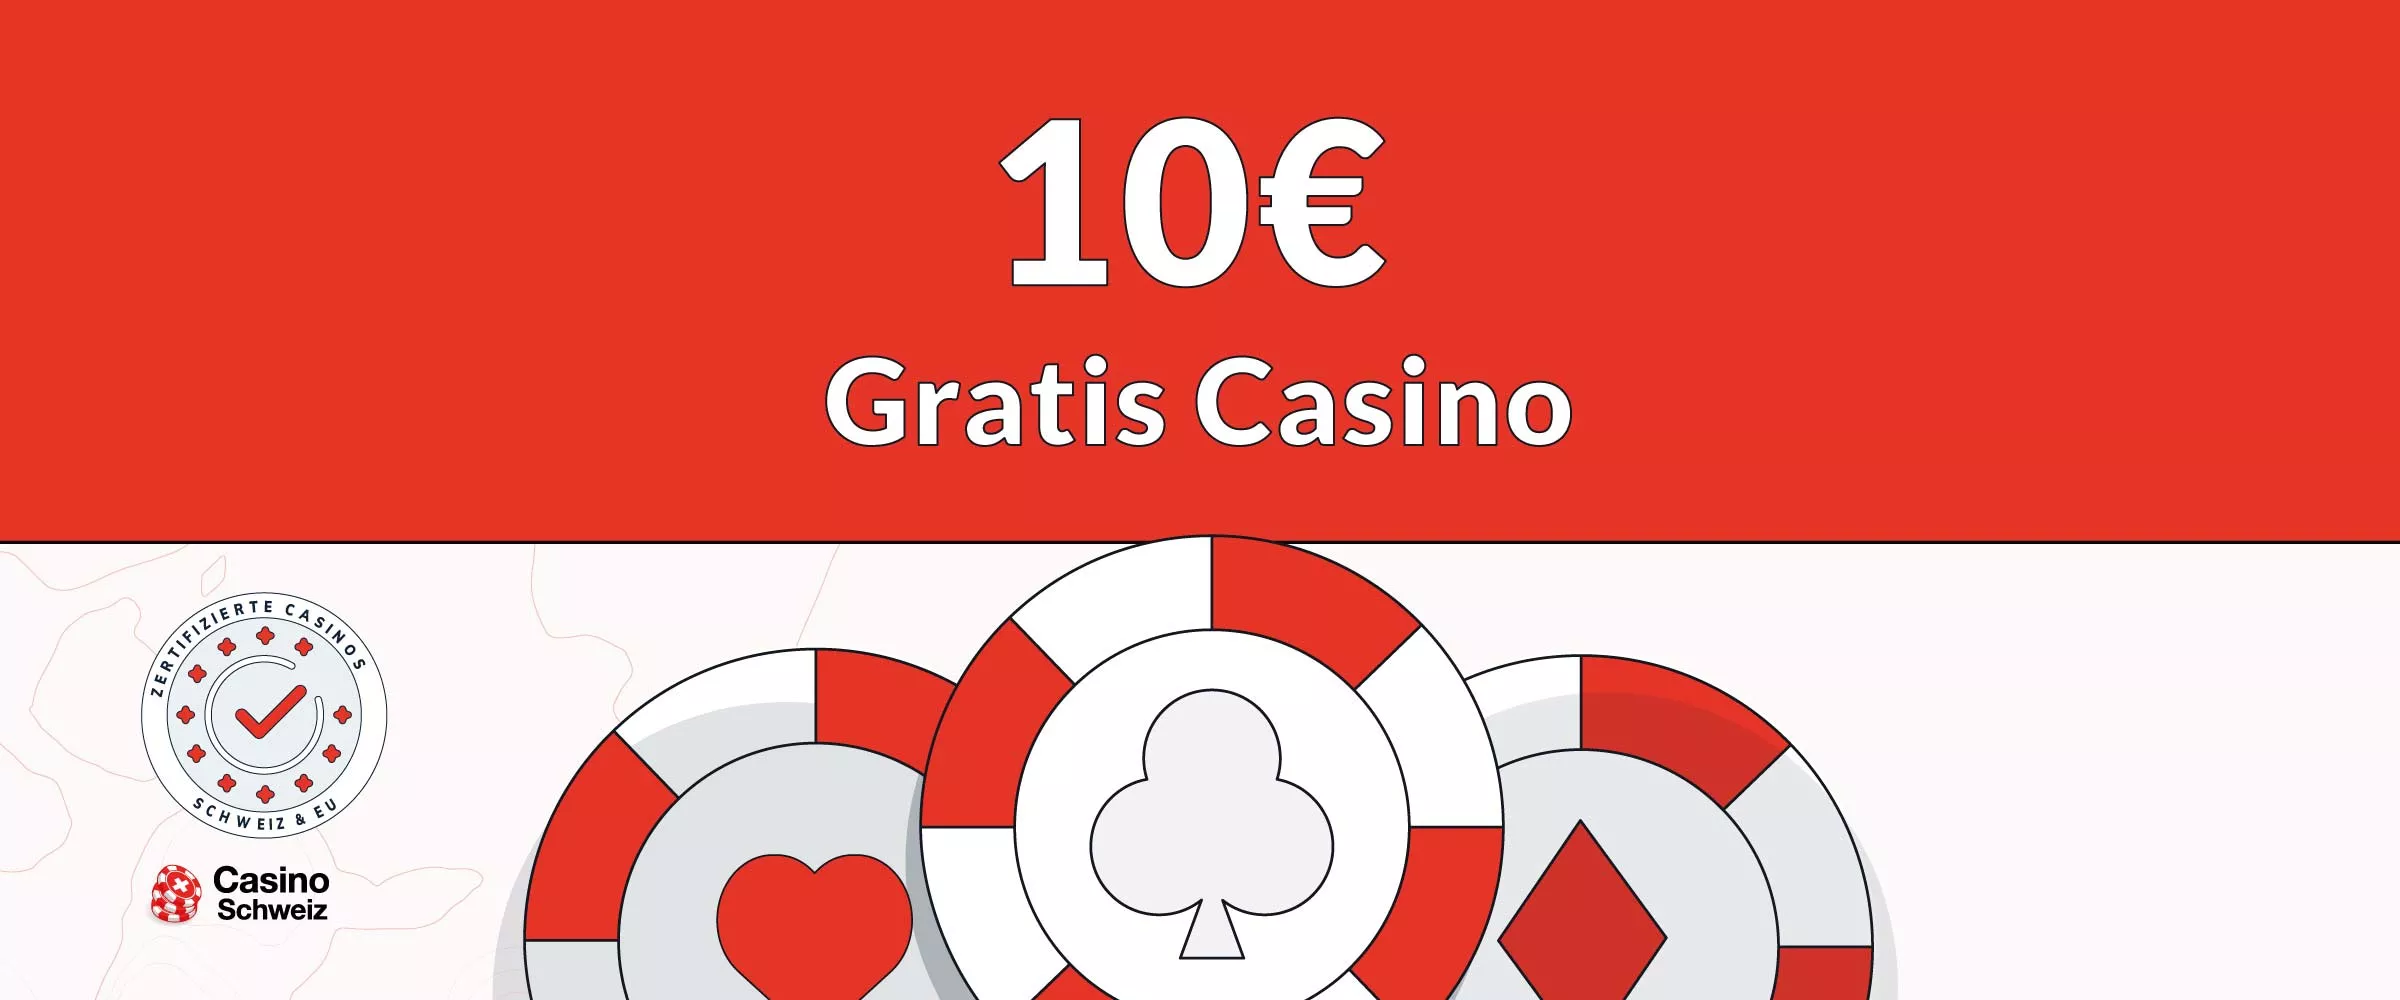 10€ Gratis Casino Bonus